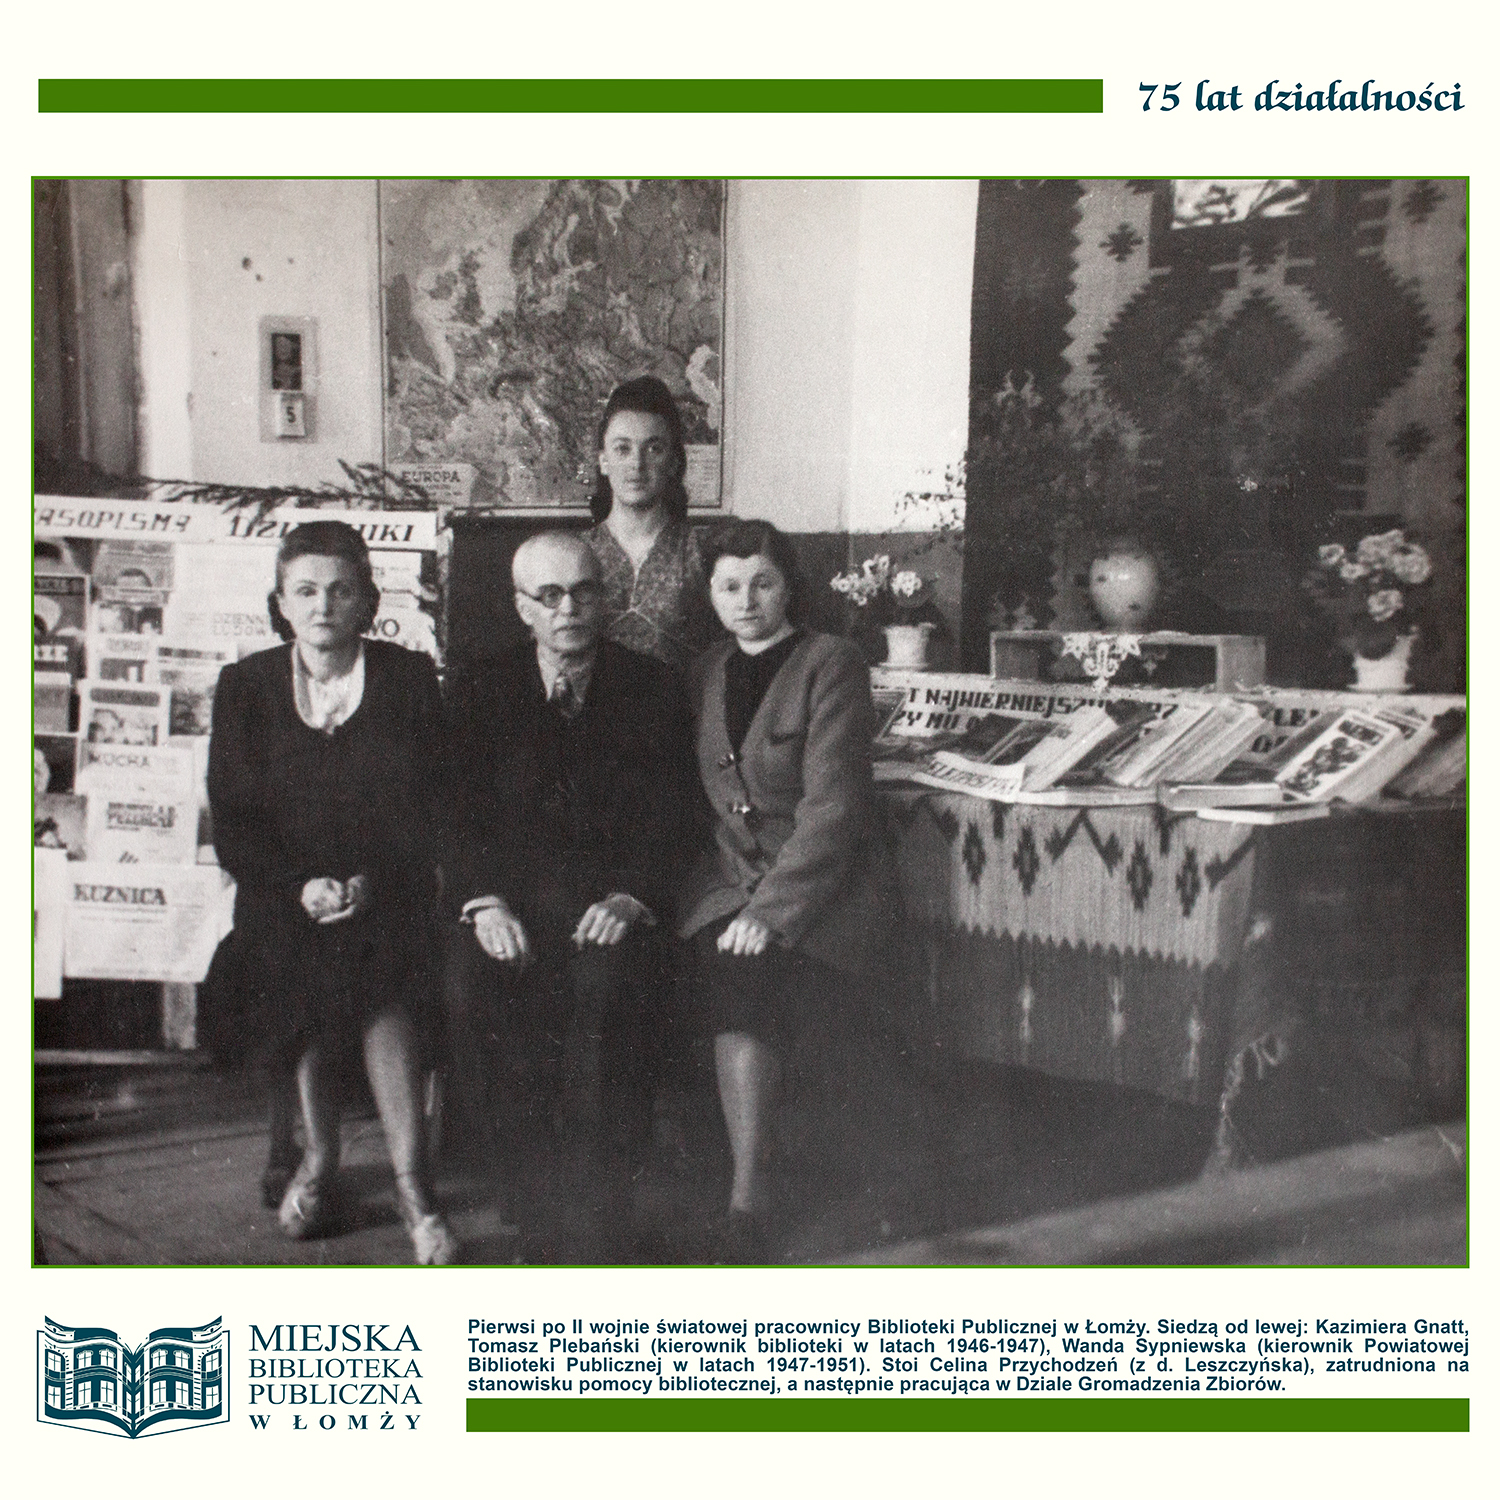 Jubileusz Miejskiej Biblioteki Publicznej w Łomży – 75 lat działalności. Fotografia z 1947 roku przedstawiająca twórców i pierwszych po wojnie pracowników biblioteki.